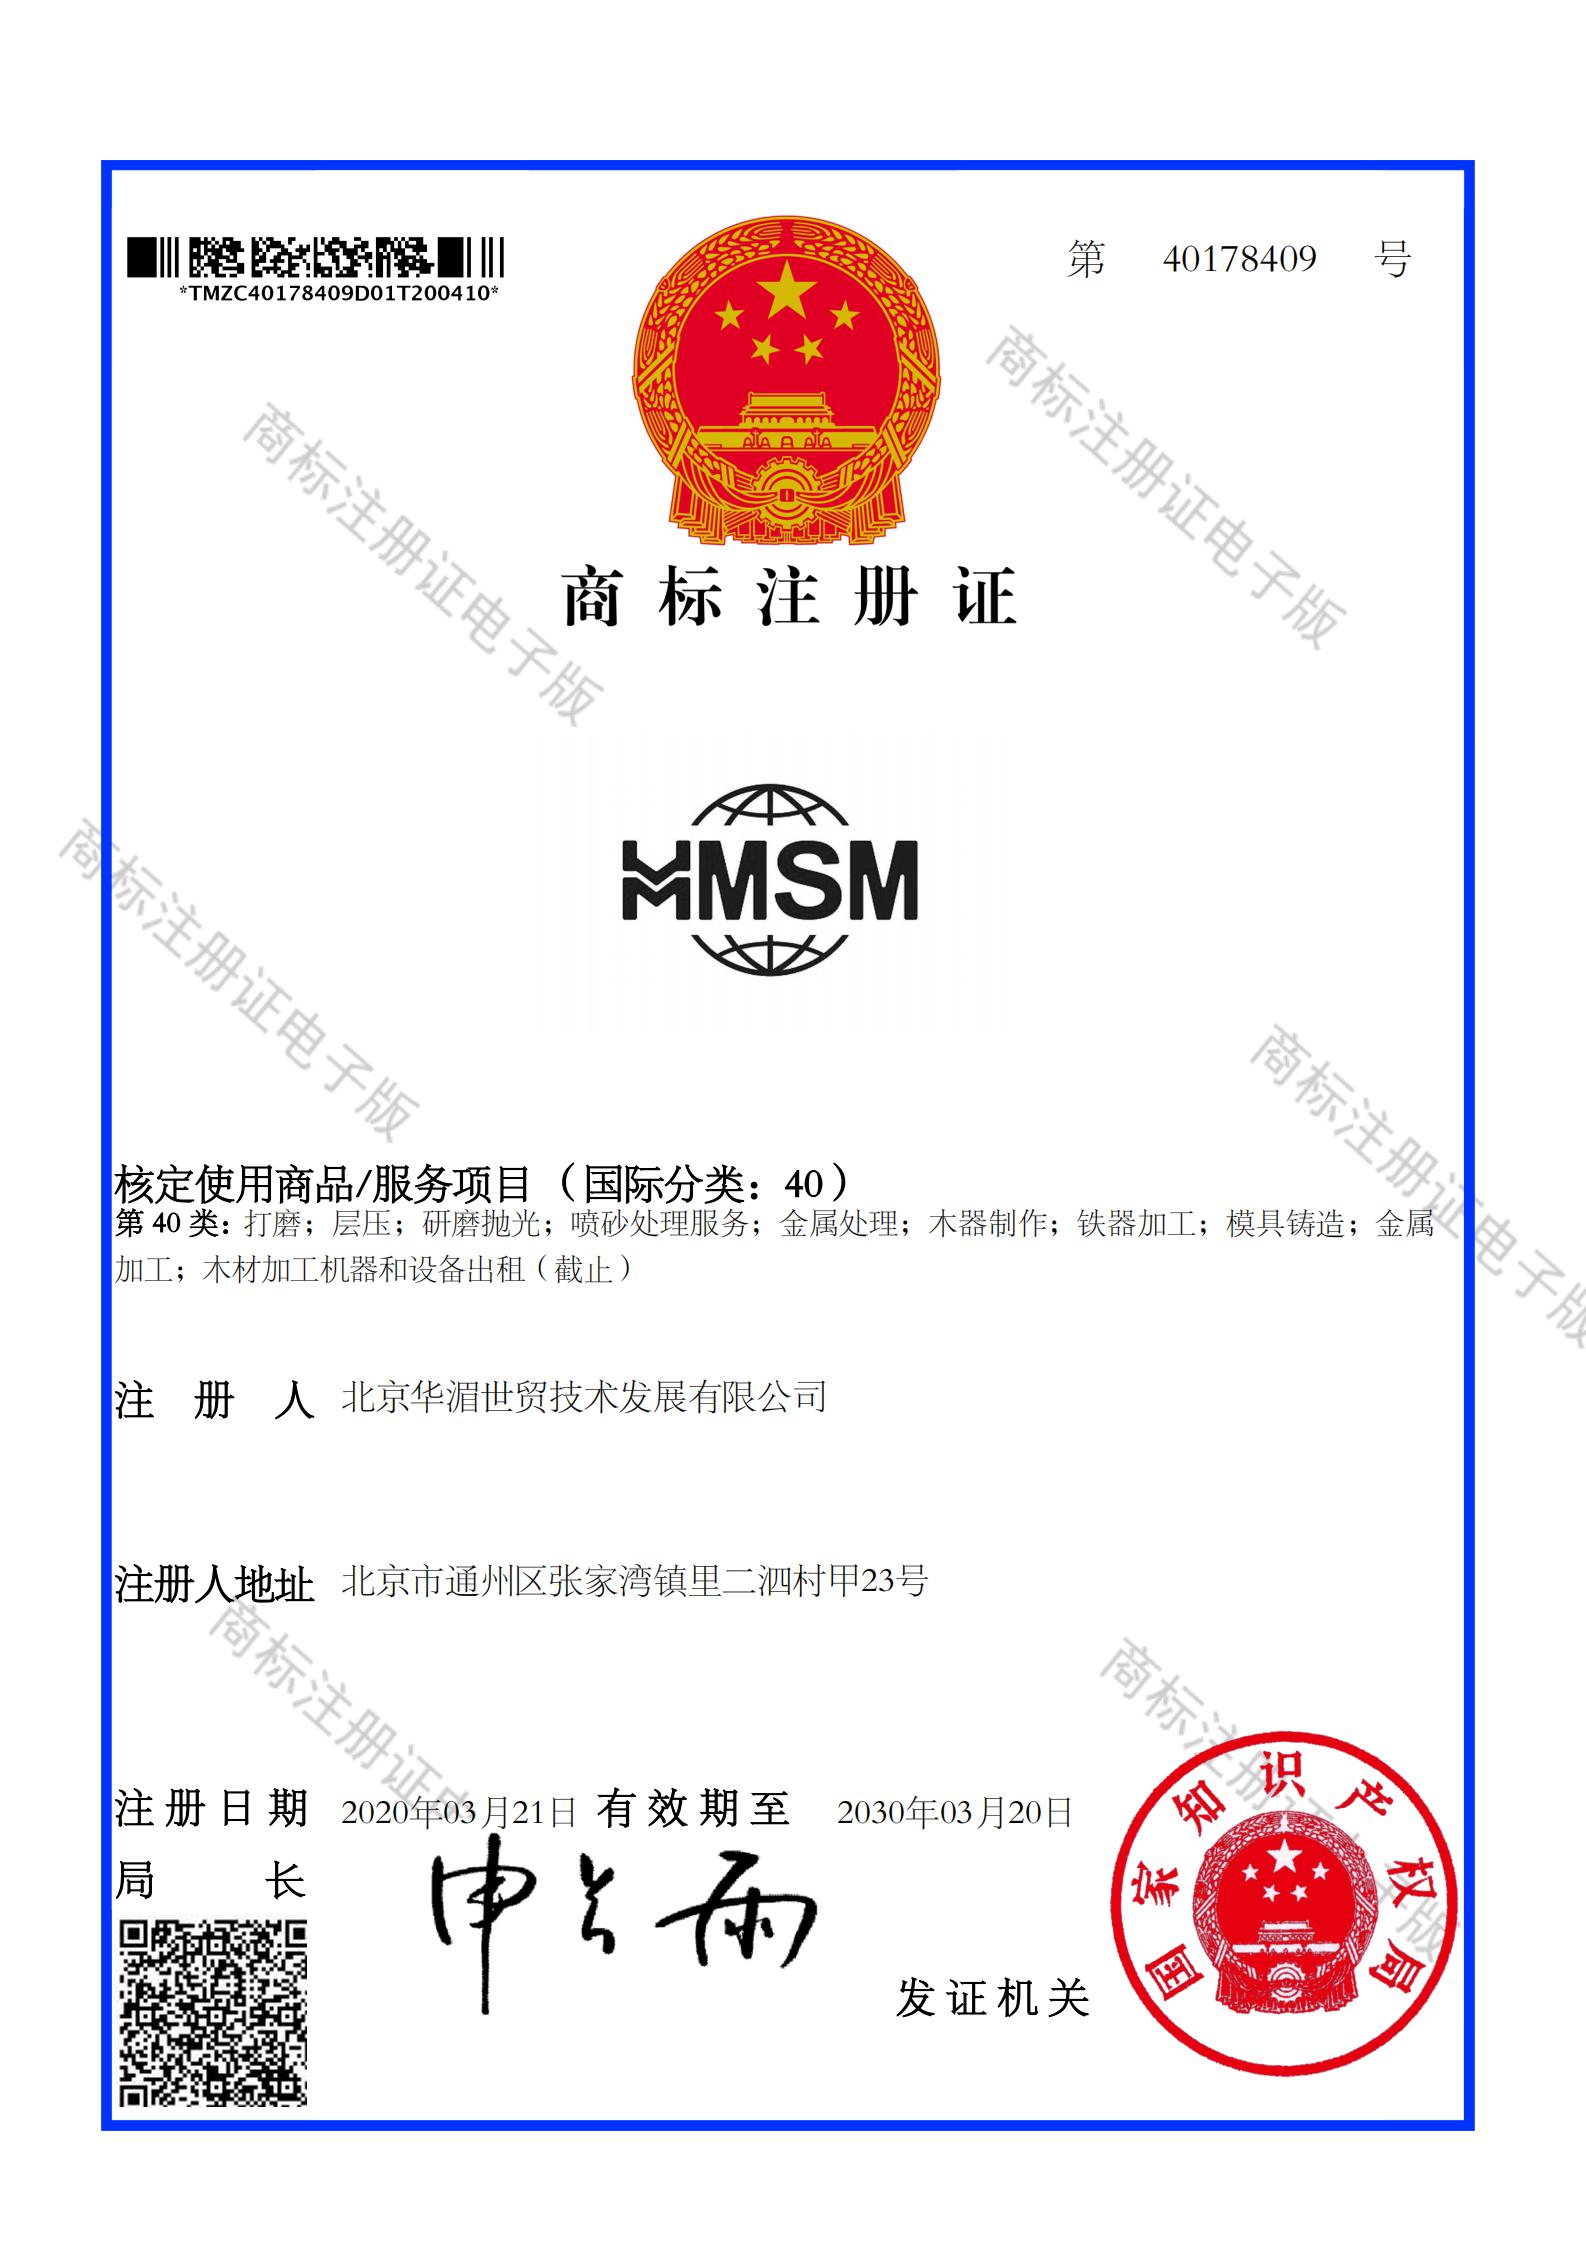 北京华湄世贸技术发展有限公司_40178409_商标注册证_00.jpg